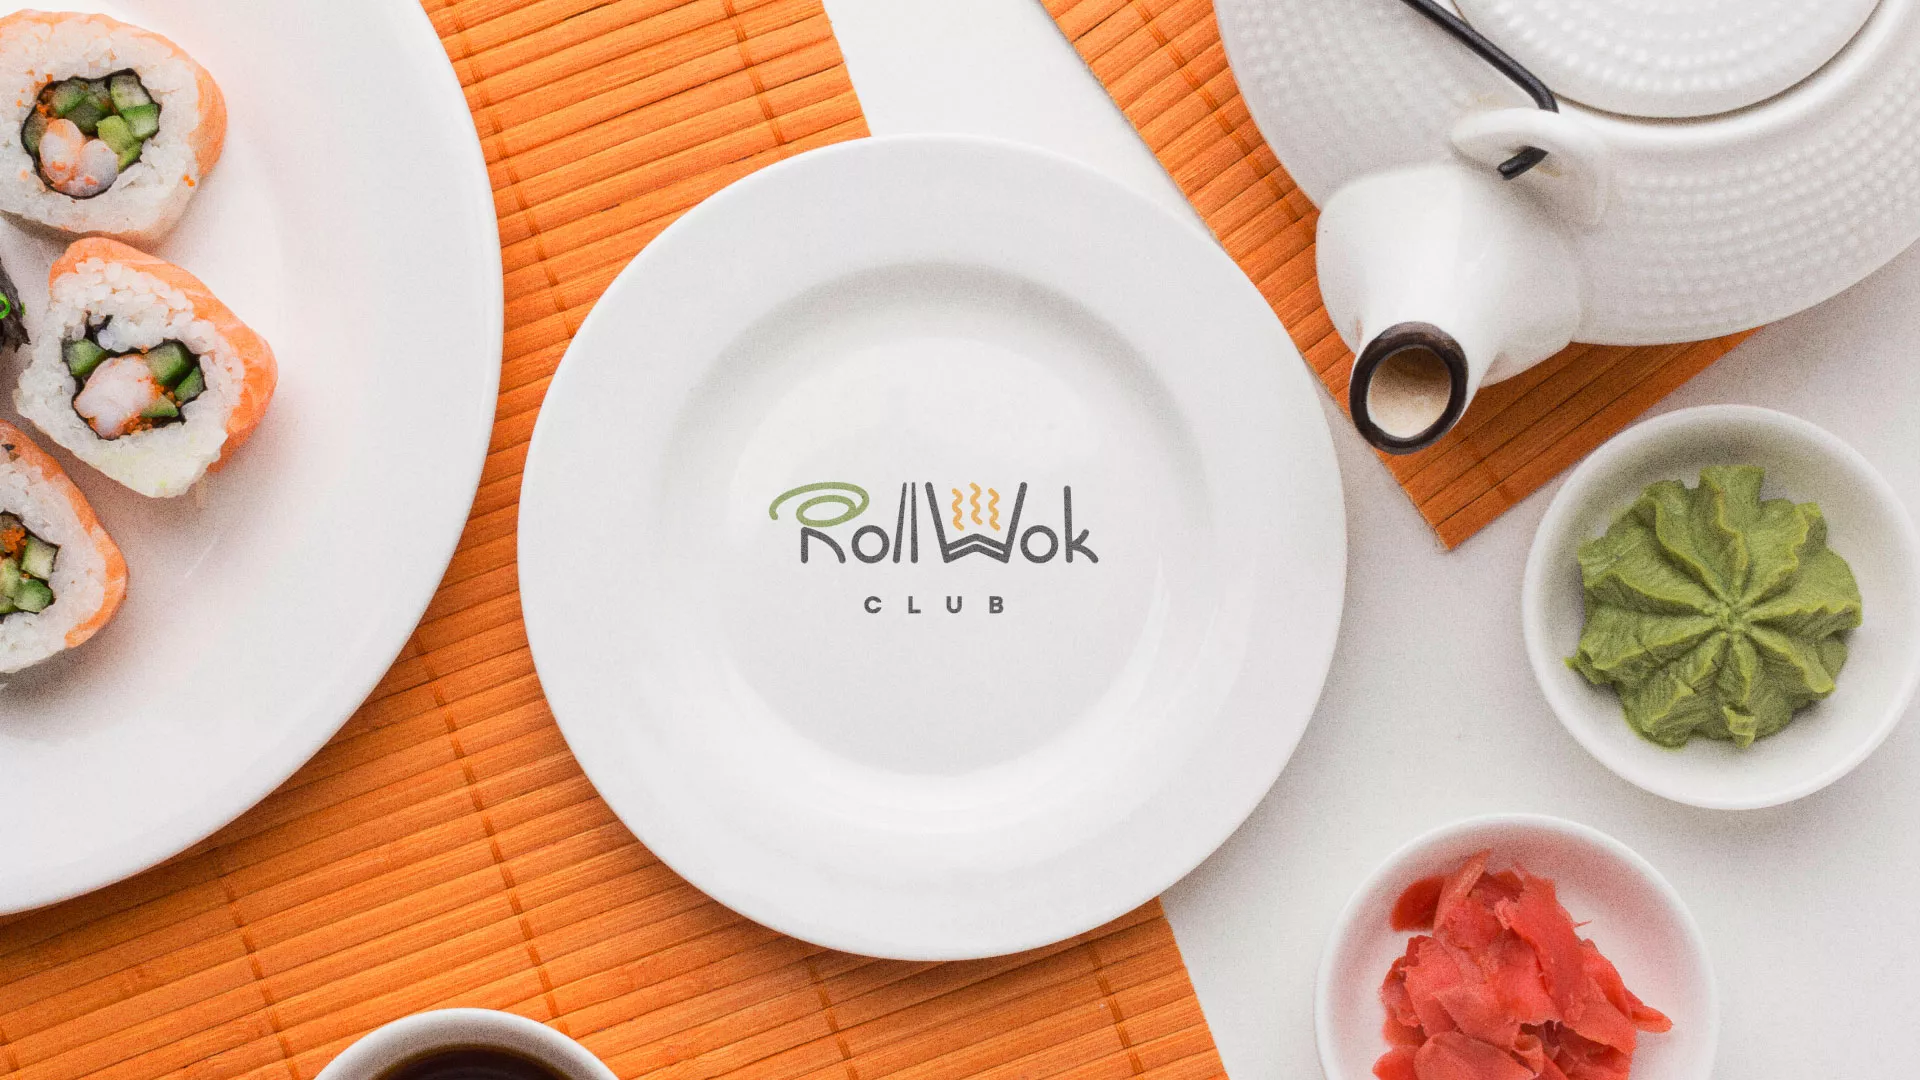 Разработка логотипа и фирменного стиля суши-бара «Roll Wok Club» в Юхнове